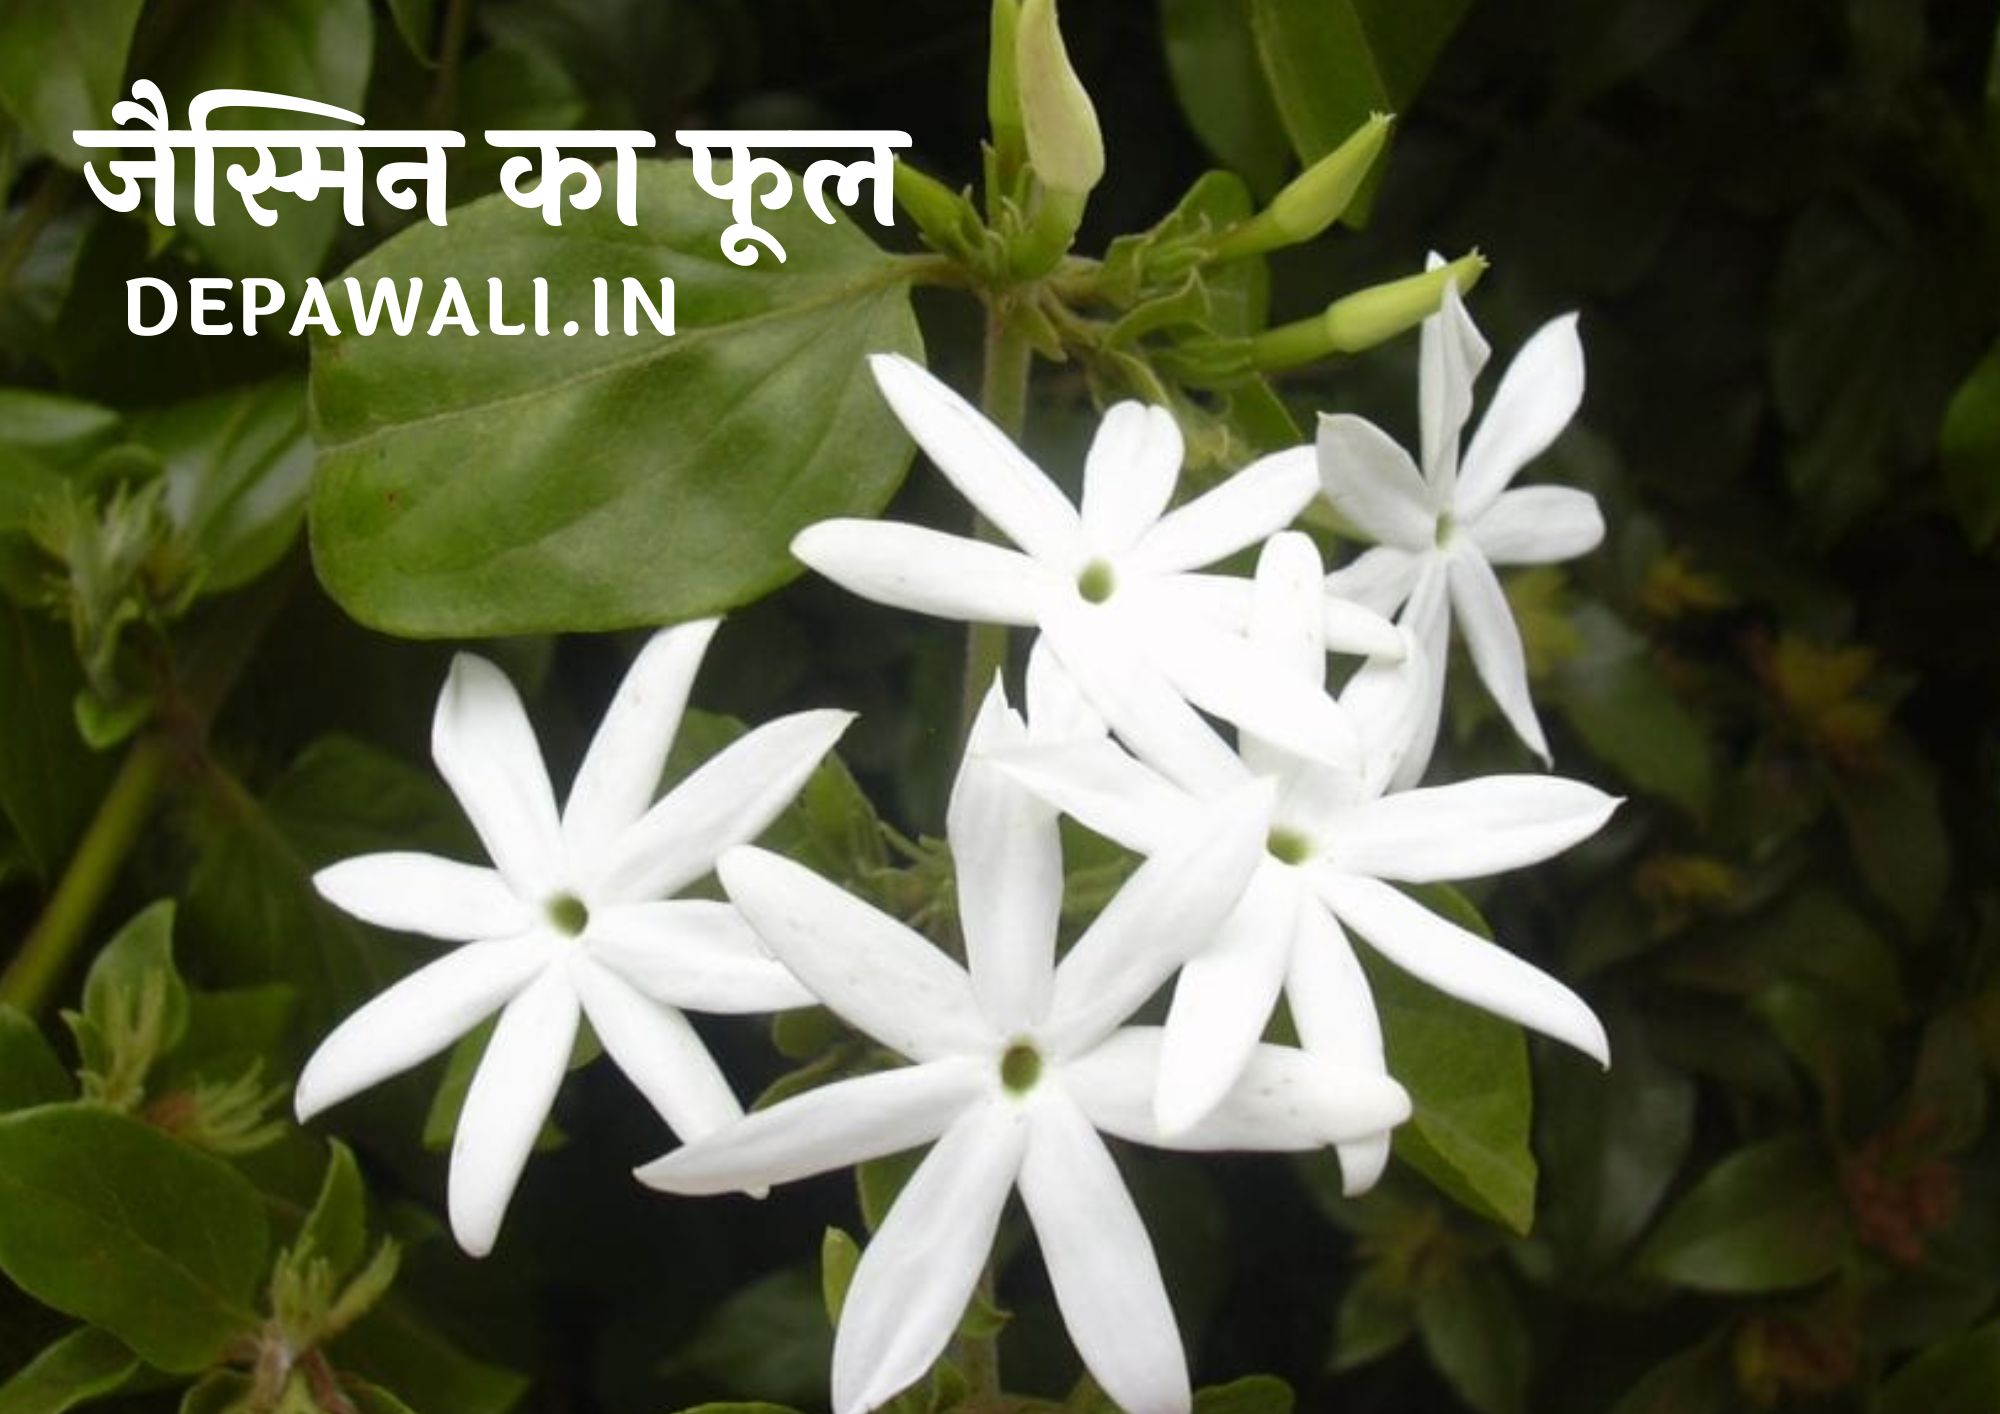 जैस्मिन का फूल कैसा होता है, जैस्मिन के फूल को हिंदी में क्या कहते है - Jasmine Ka Phool Kaisa Hota Hai - Information About Jasmine Flower In Hindi Name